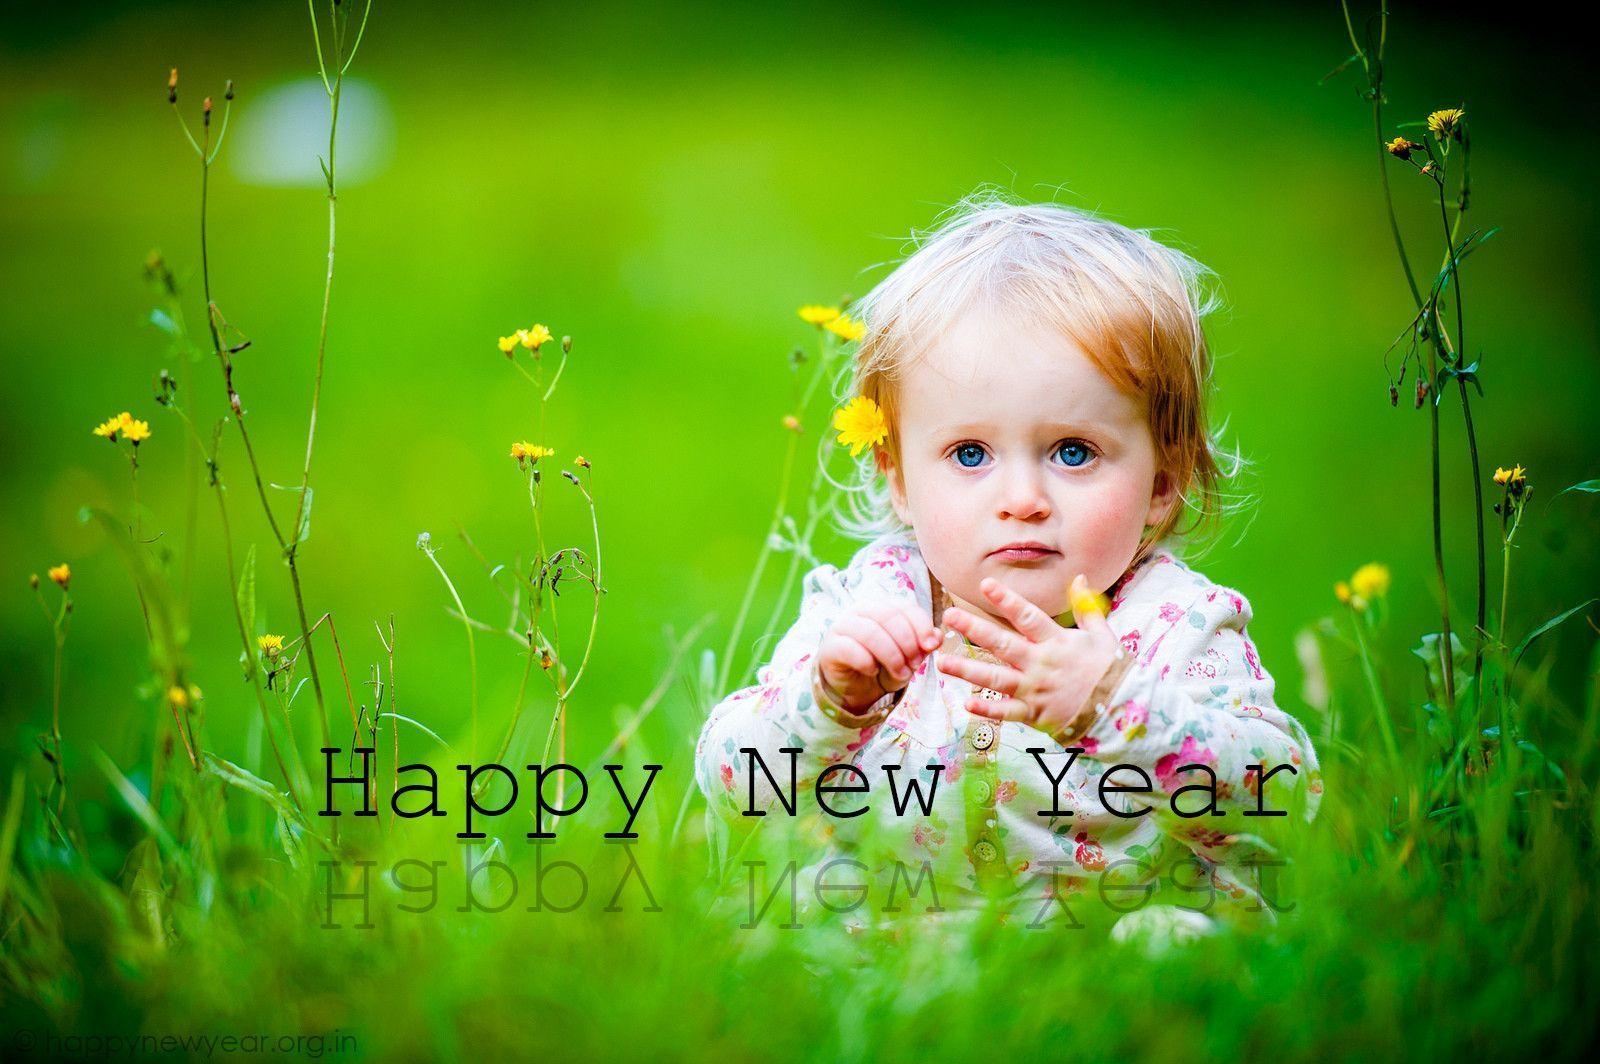 Cute babies Happy New Year 2015 Wallpaper in HD